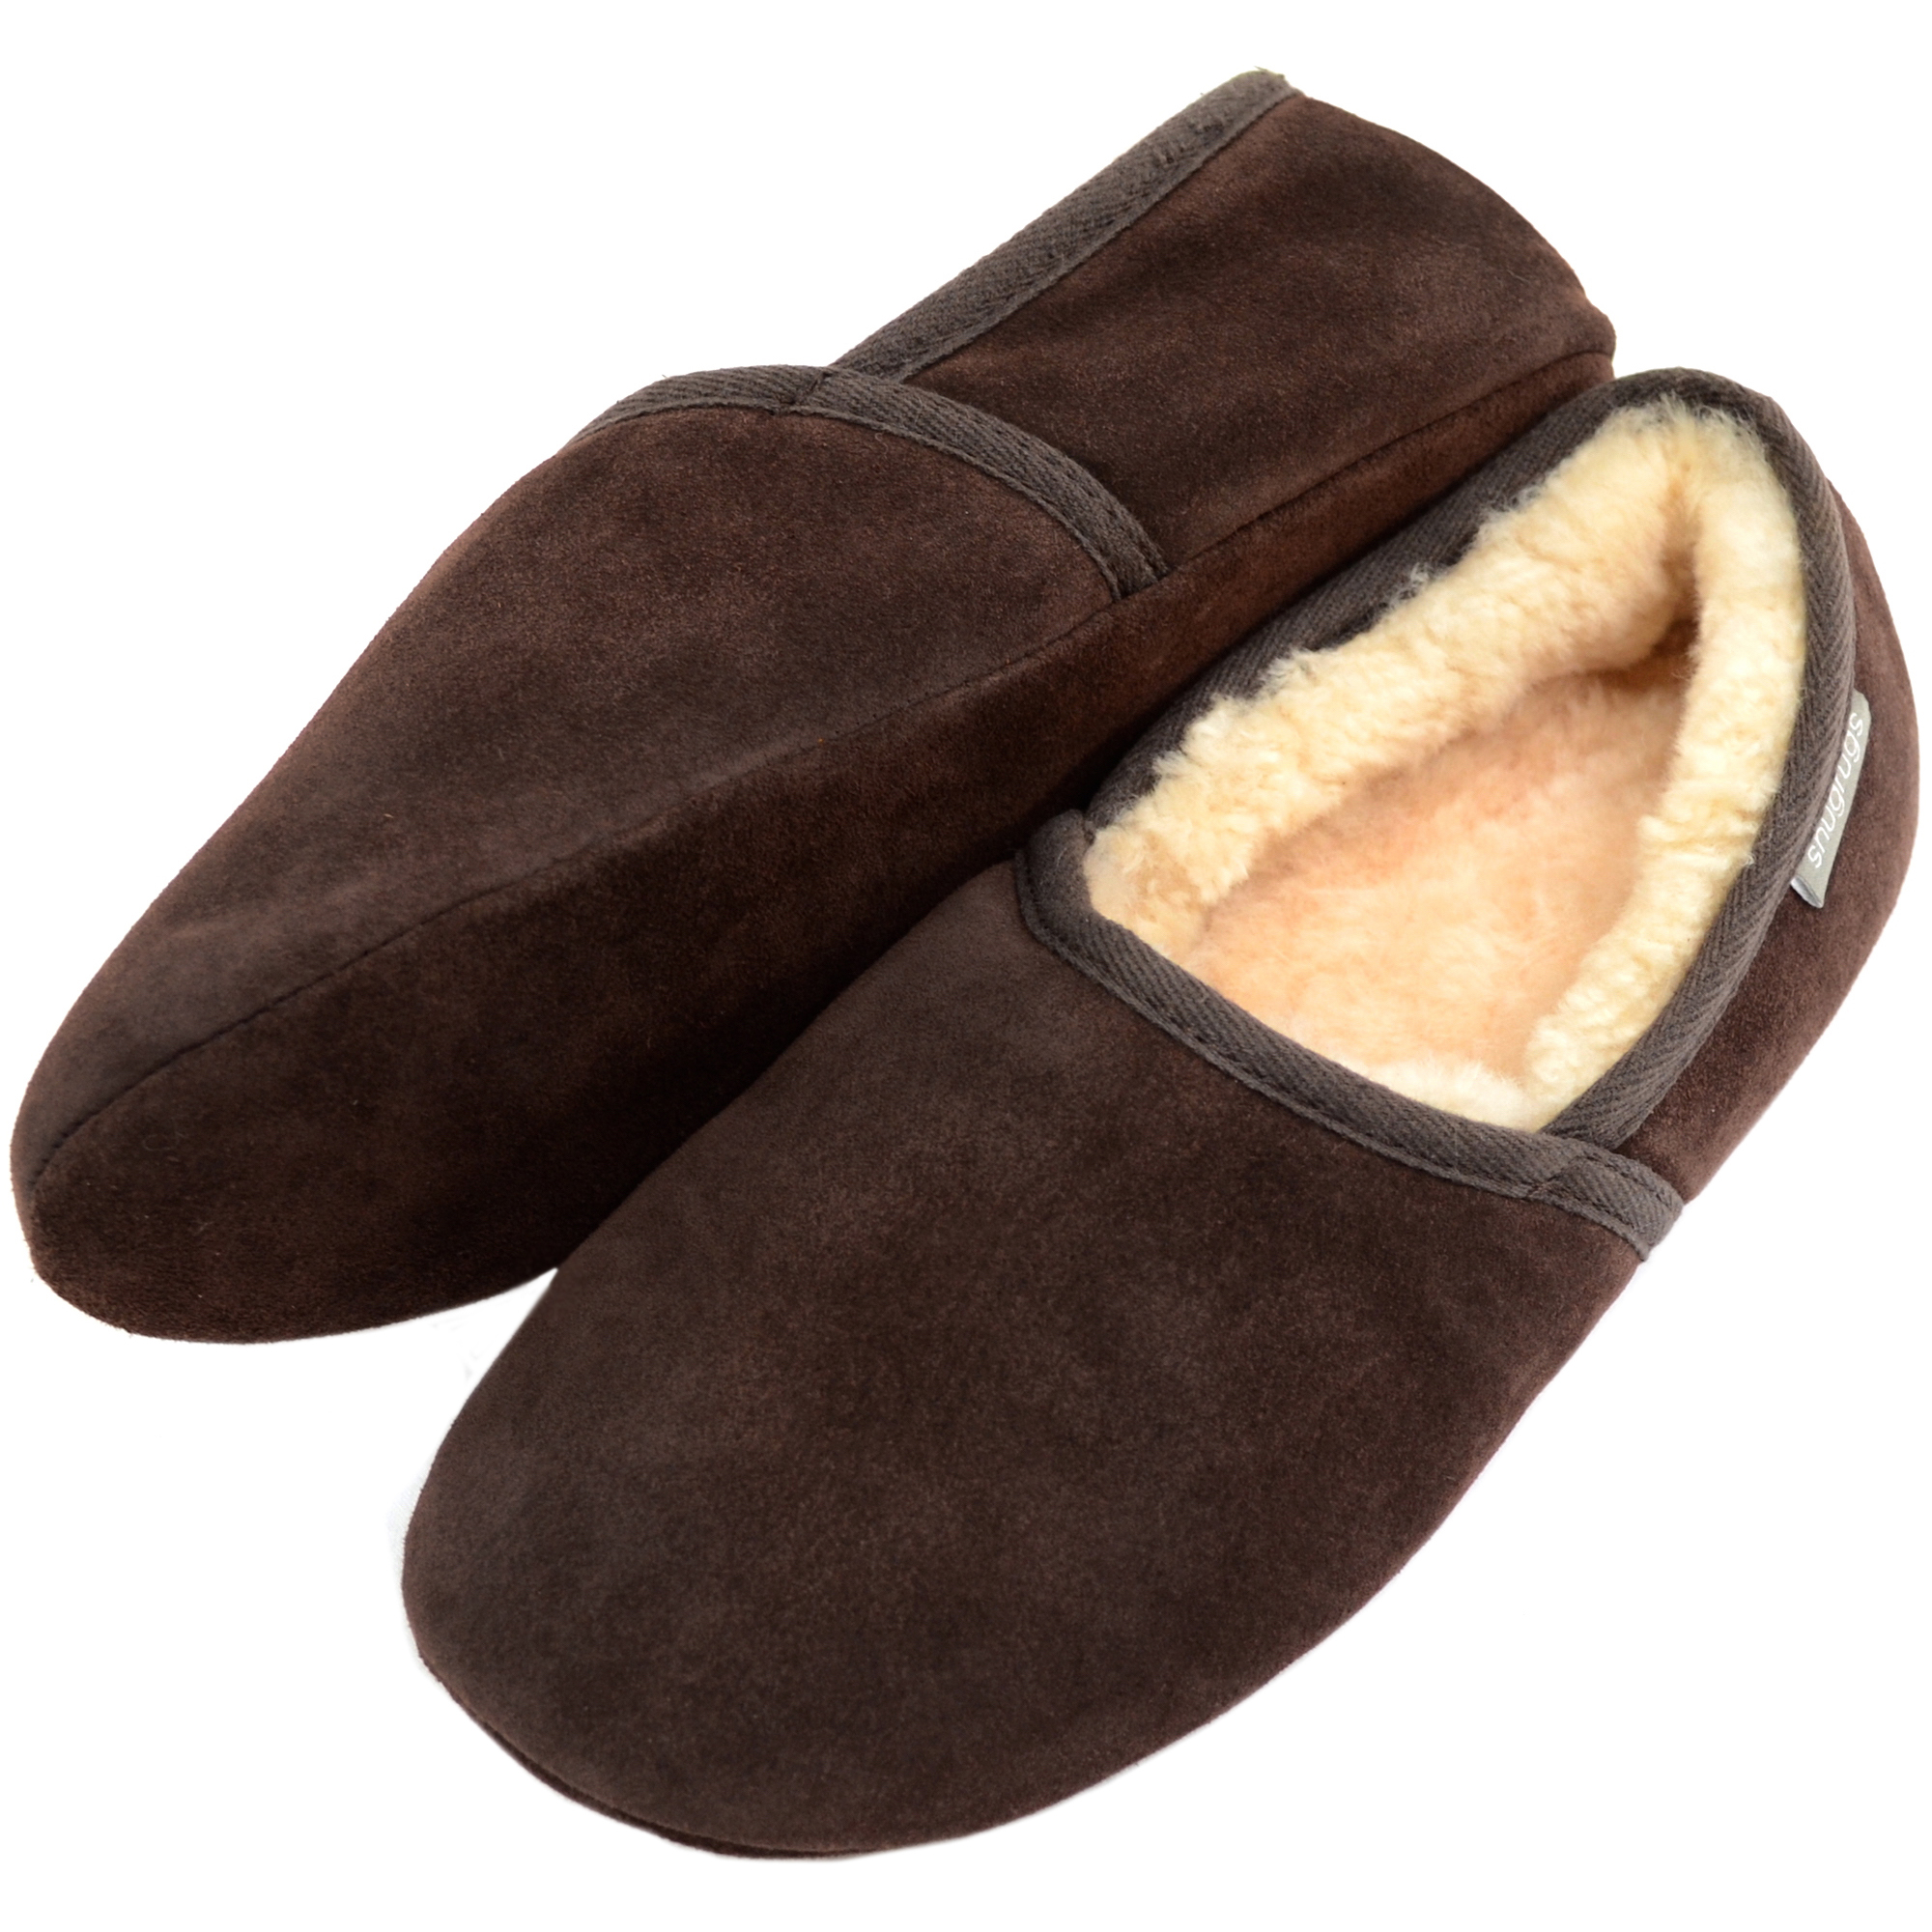 fenlands sheepskin slippers